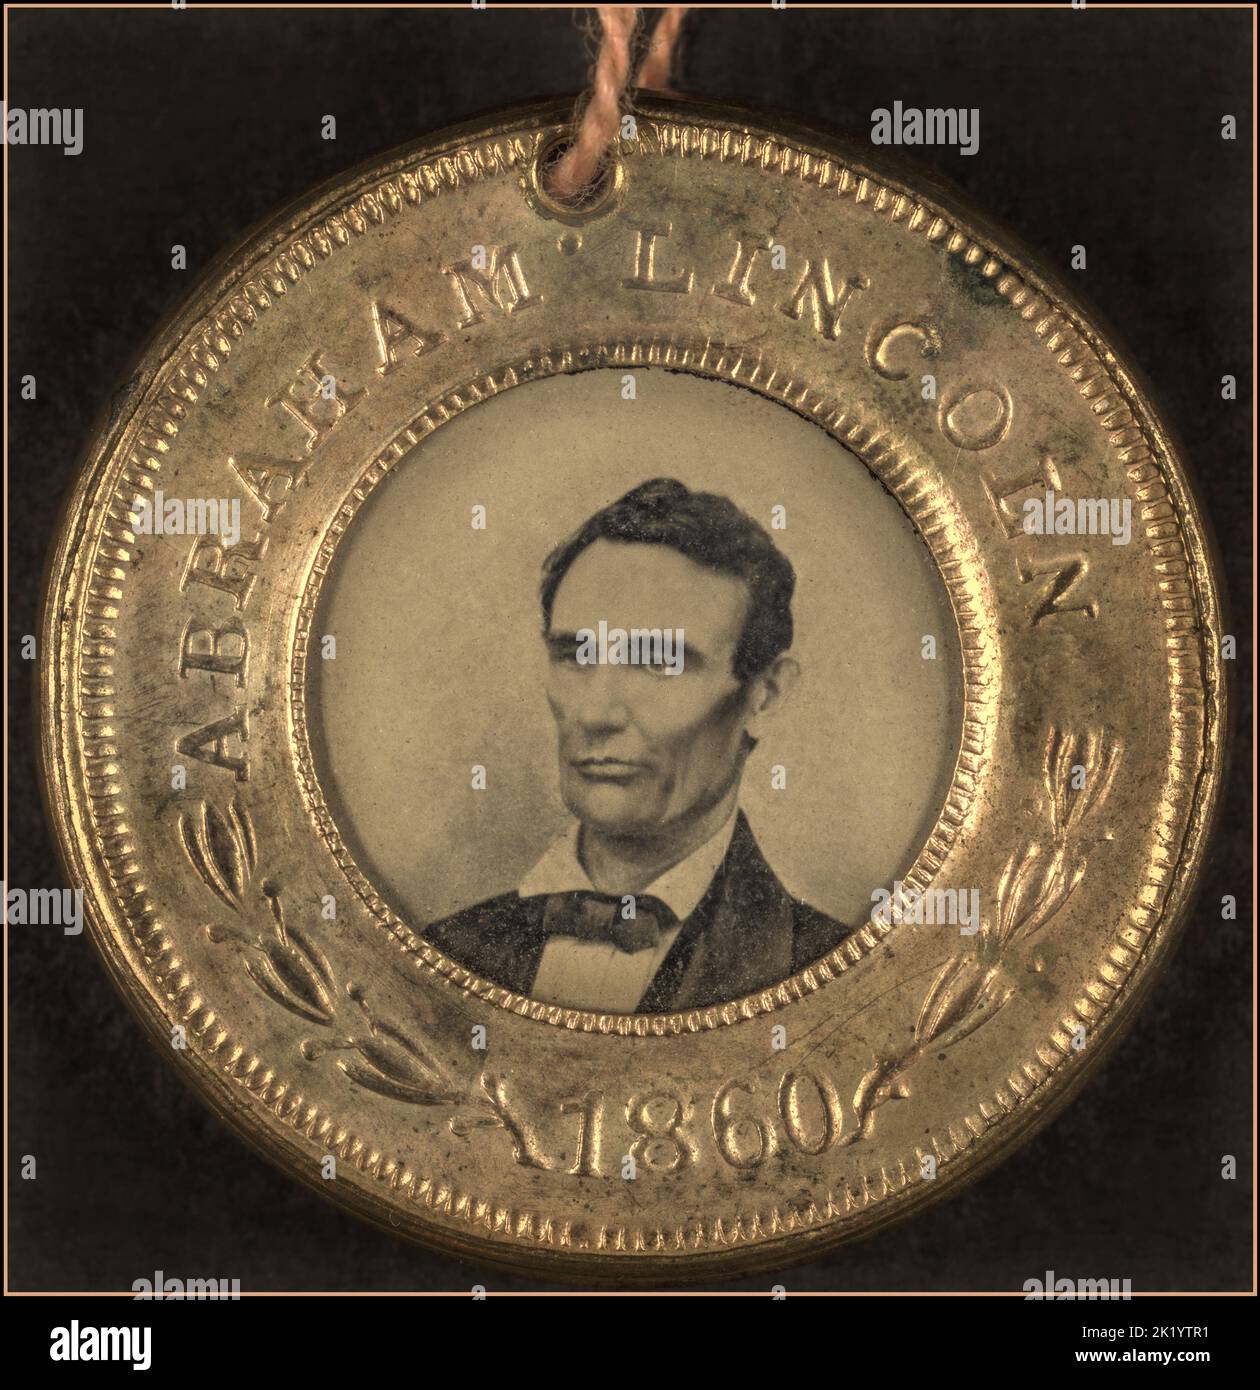 Botón DE la campaña presidencial DE LINCOLN para Abraham Lincoln, 1860. Retrato aparece en tipo de tinta. El reverso de Button es un tipo de compañero de running Hannibal Hamlin. Uno de los primeros ejemplos de imágenes fotográficas en botones políticos. Fecha 1860 Foto de stock